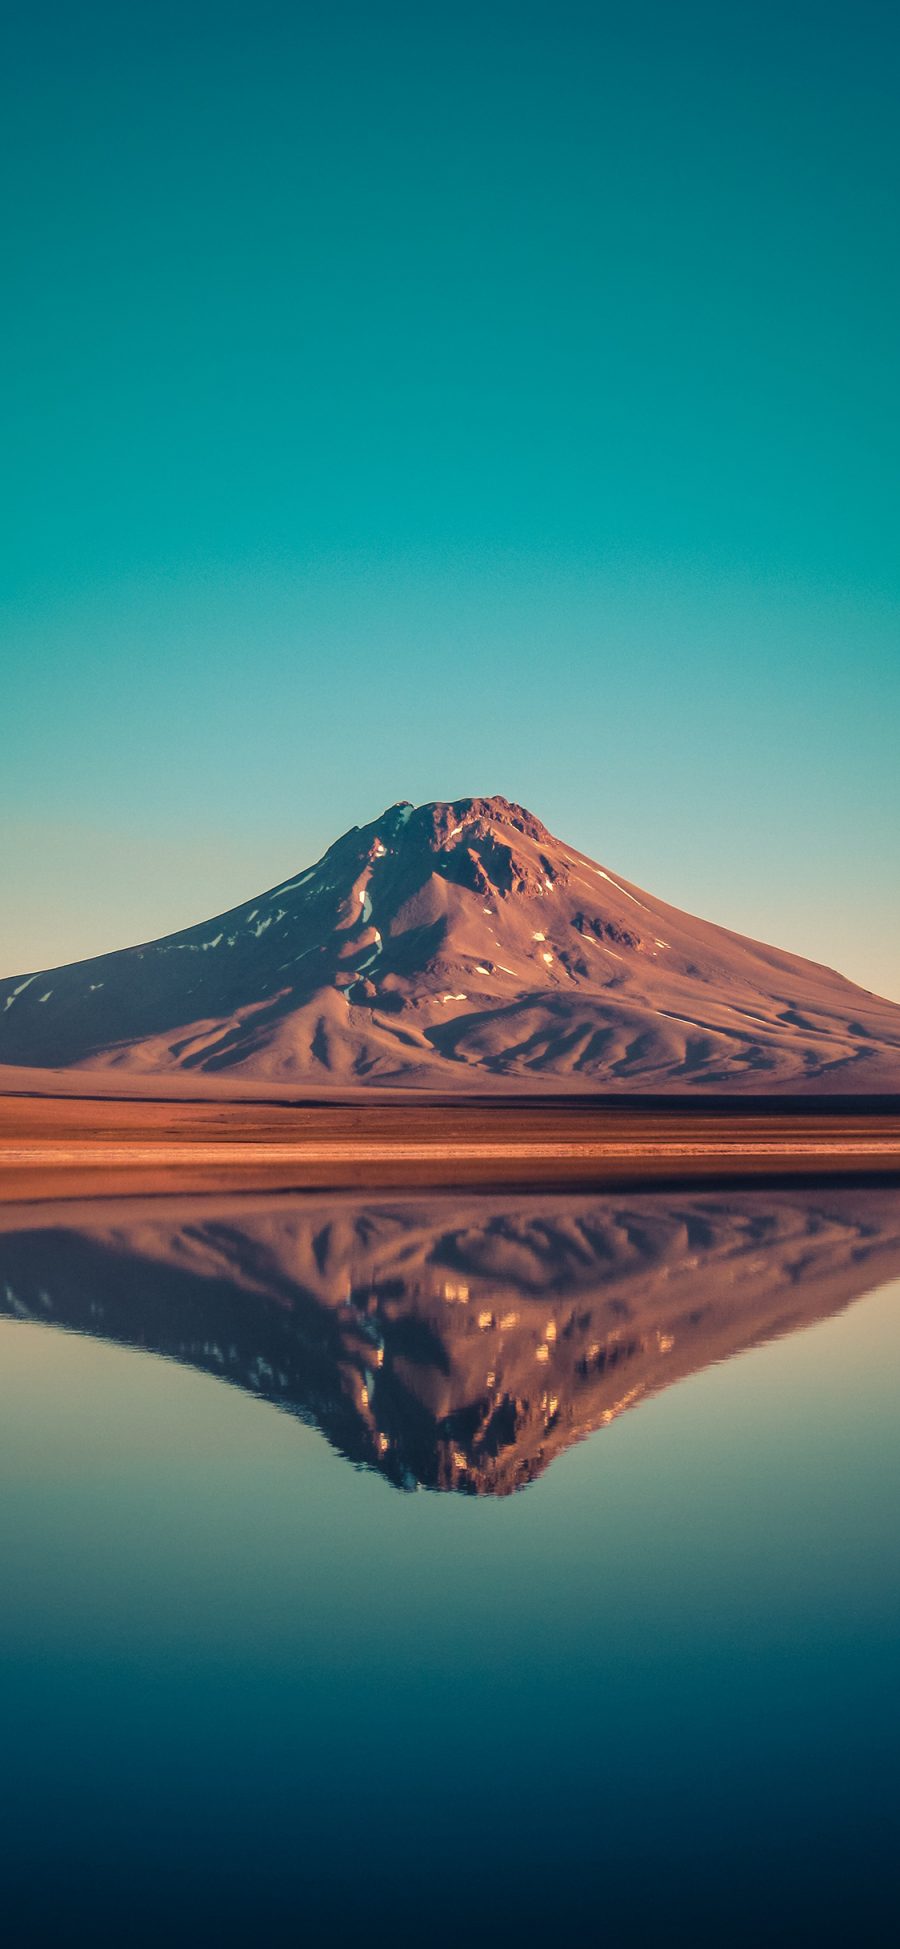 [2436×1125]郊外 山峰 沙漠 湖泊 倒映 苹果手机壁纸图片